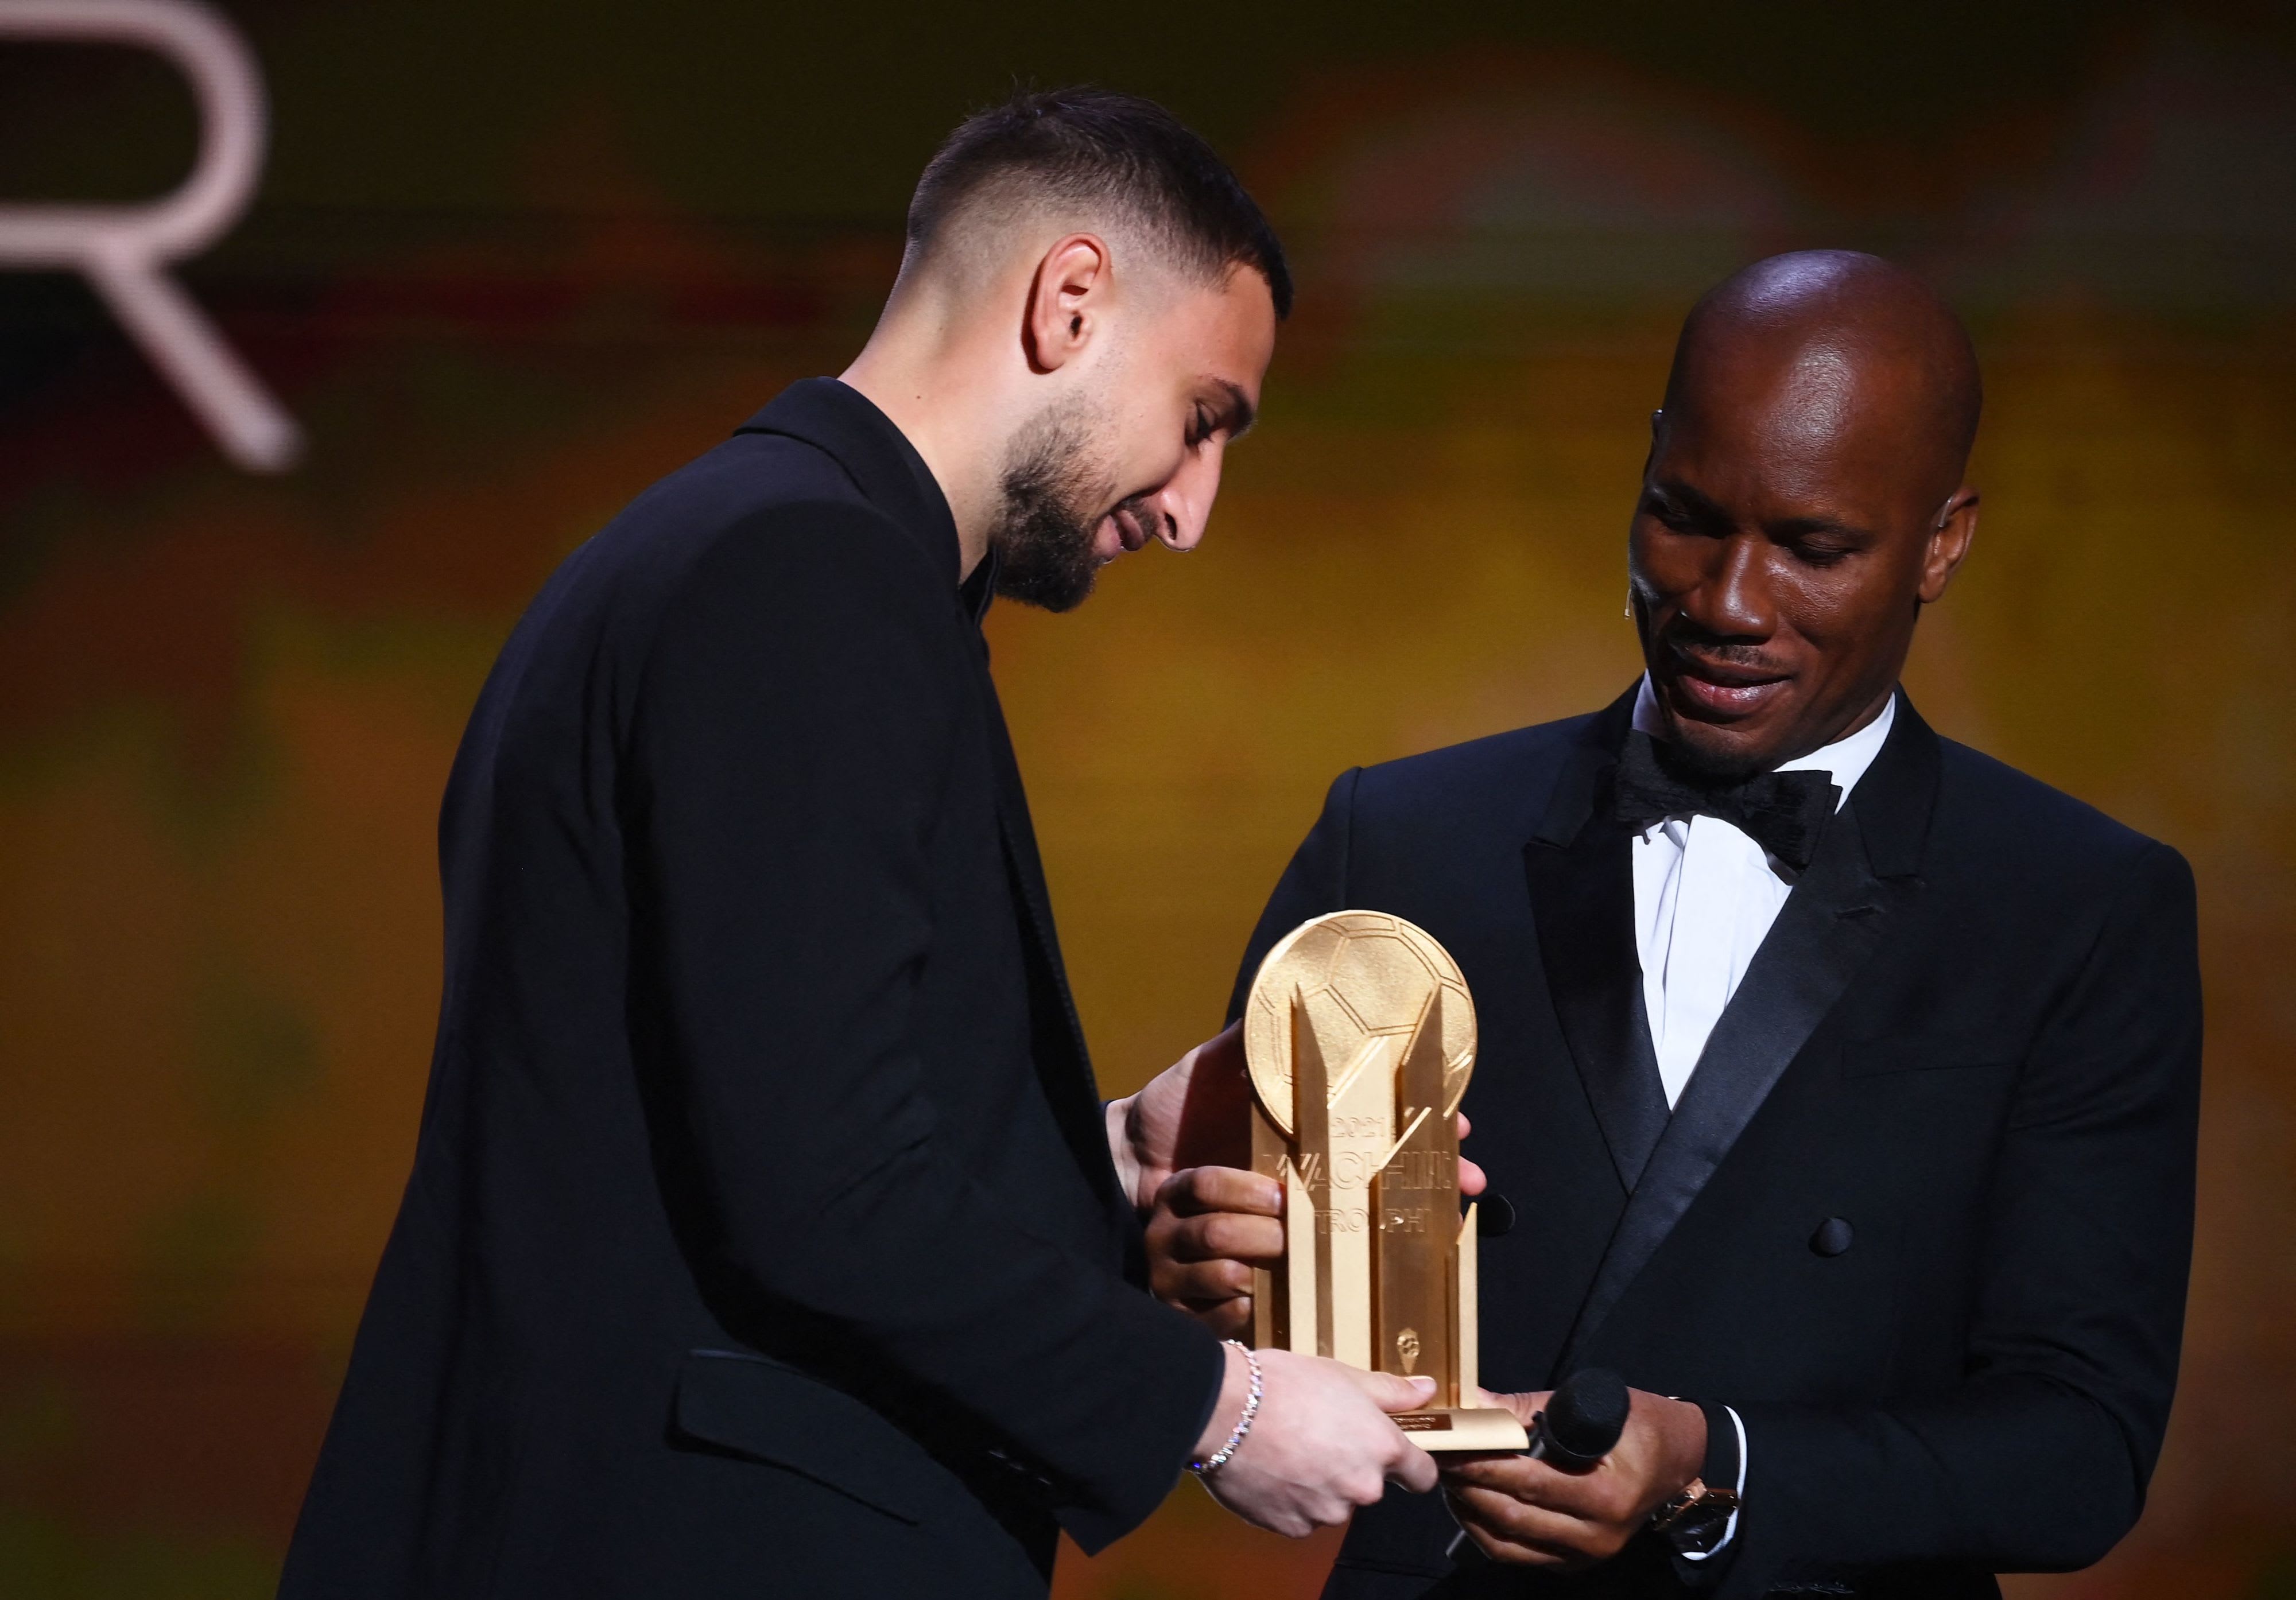 דידייה דרוגבה מעניק לשוער ג'אנלואיג'י דונארומה את פרס שוער השנה בטקס כדור הזהב 2021